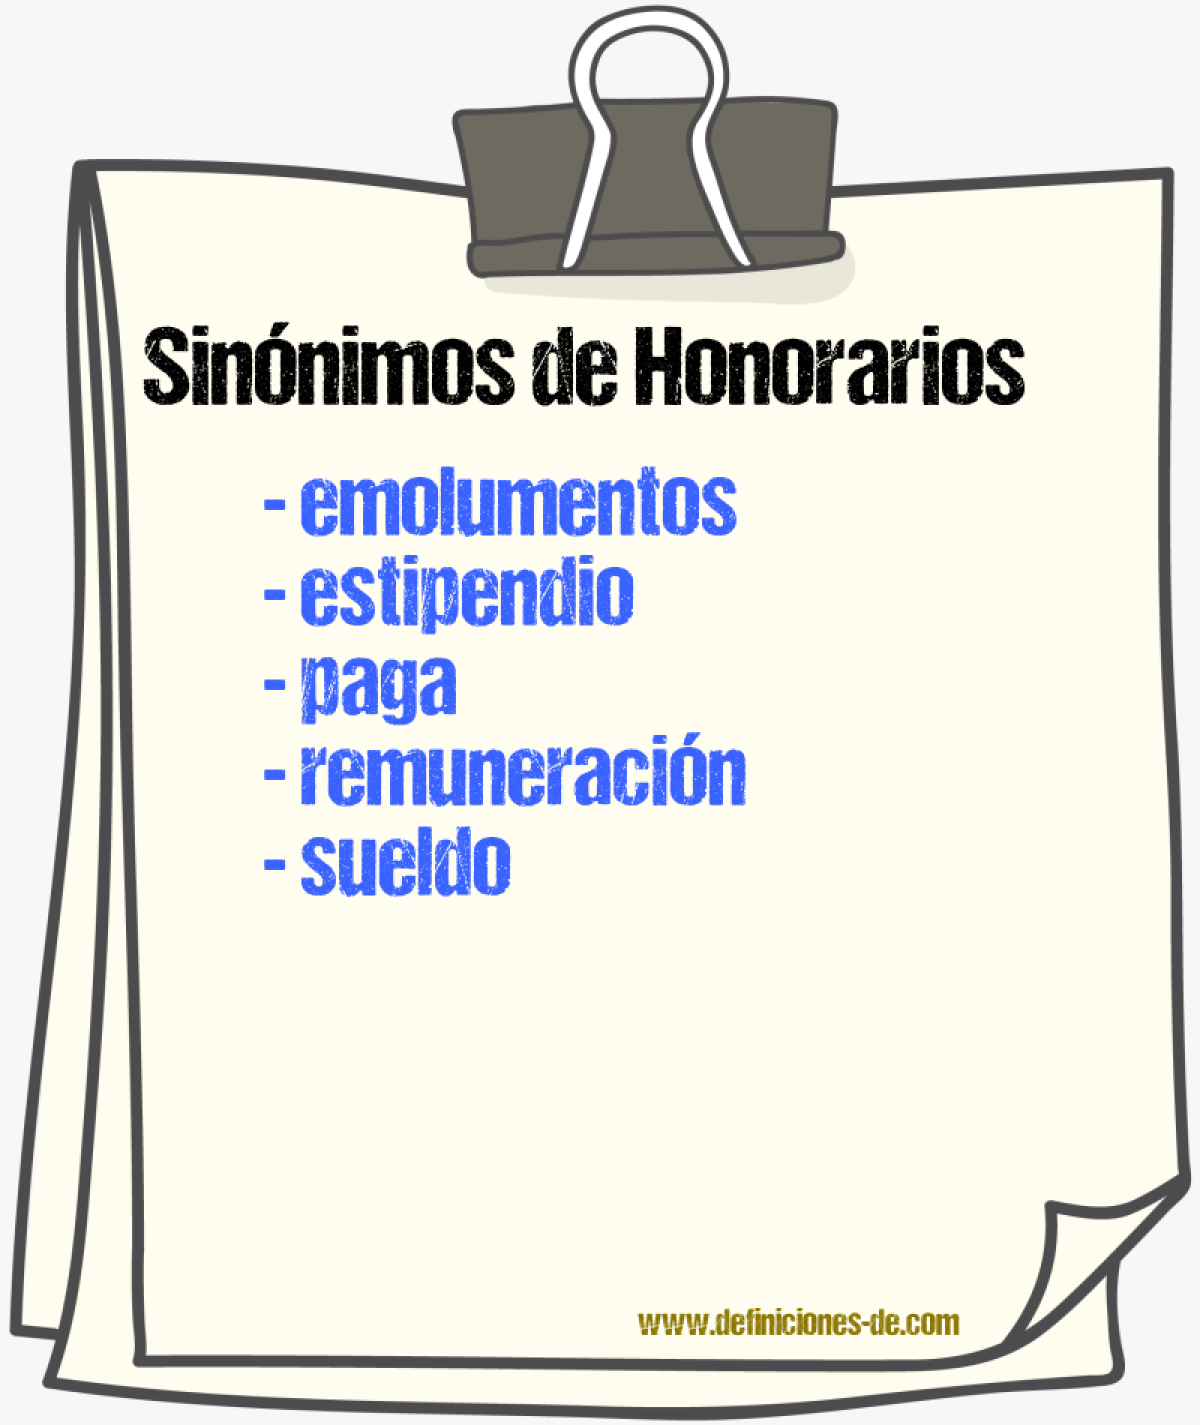 Sinónimos de honorarios